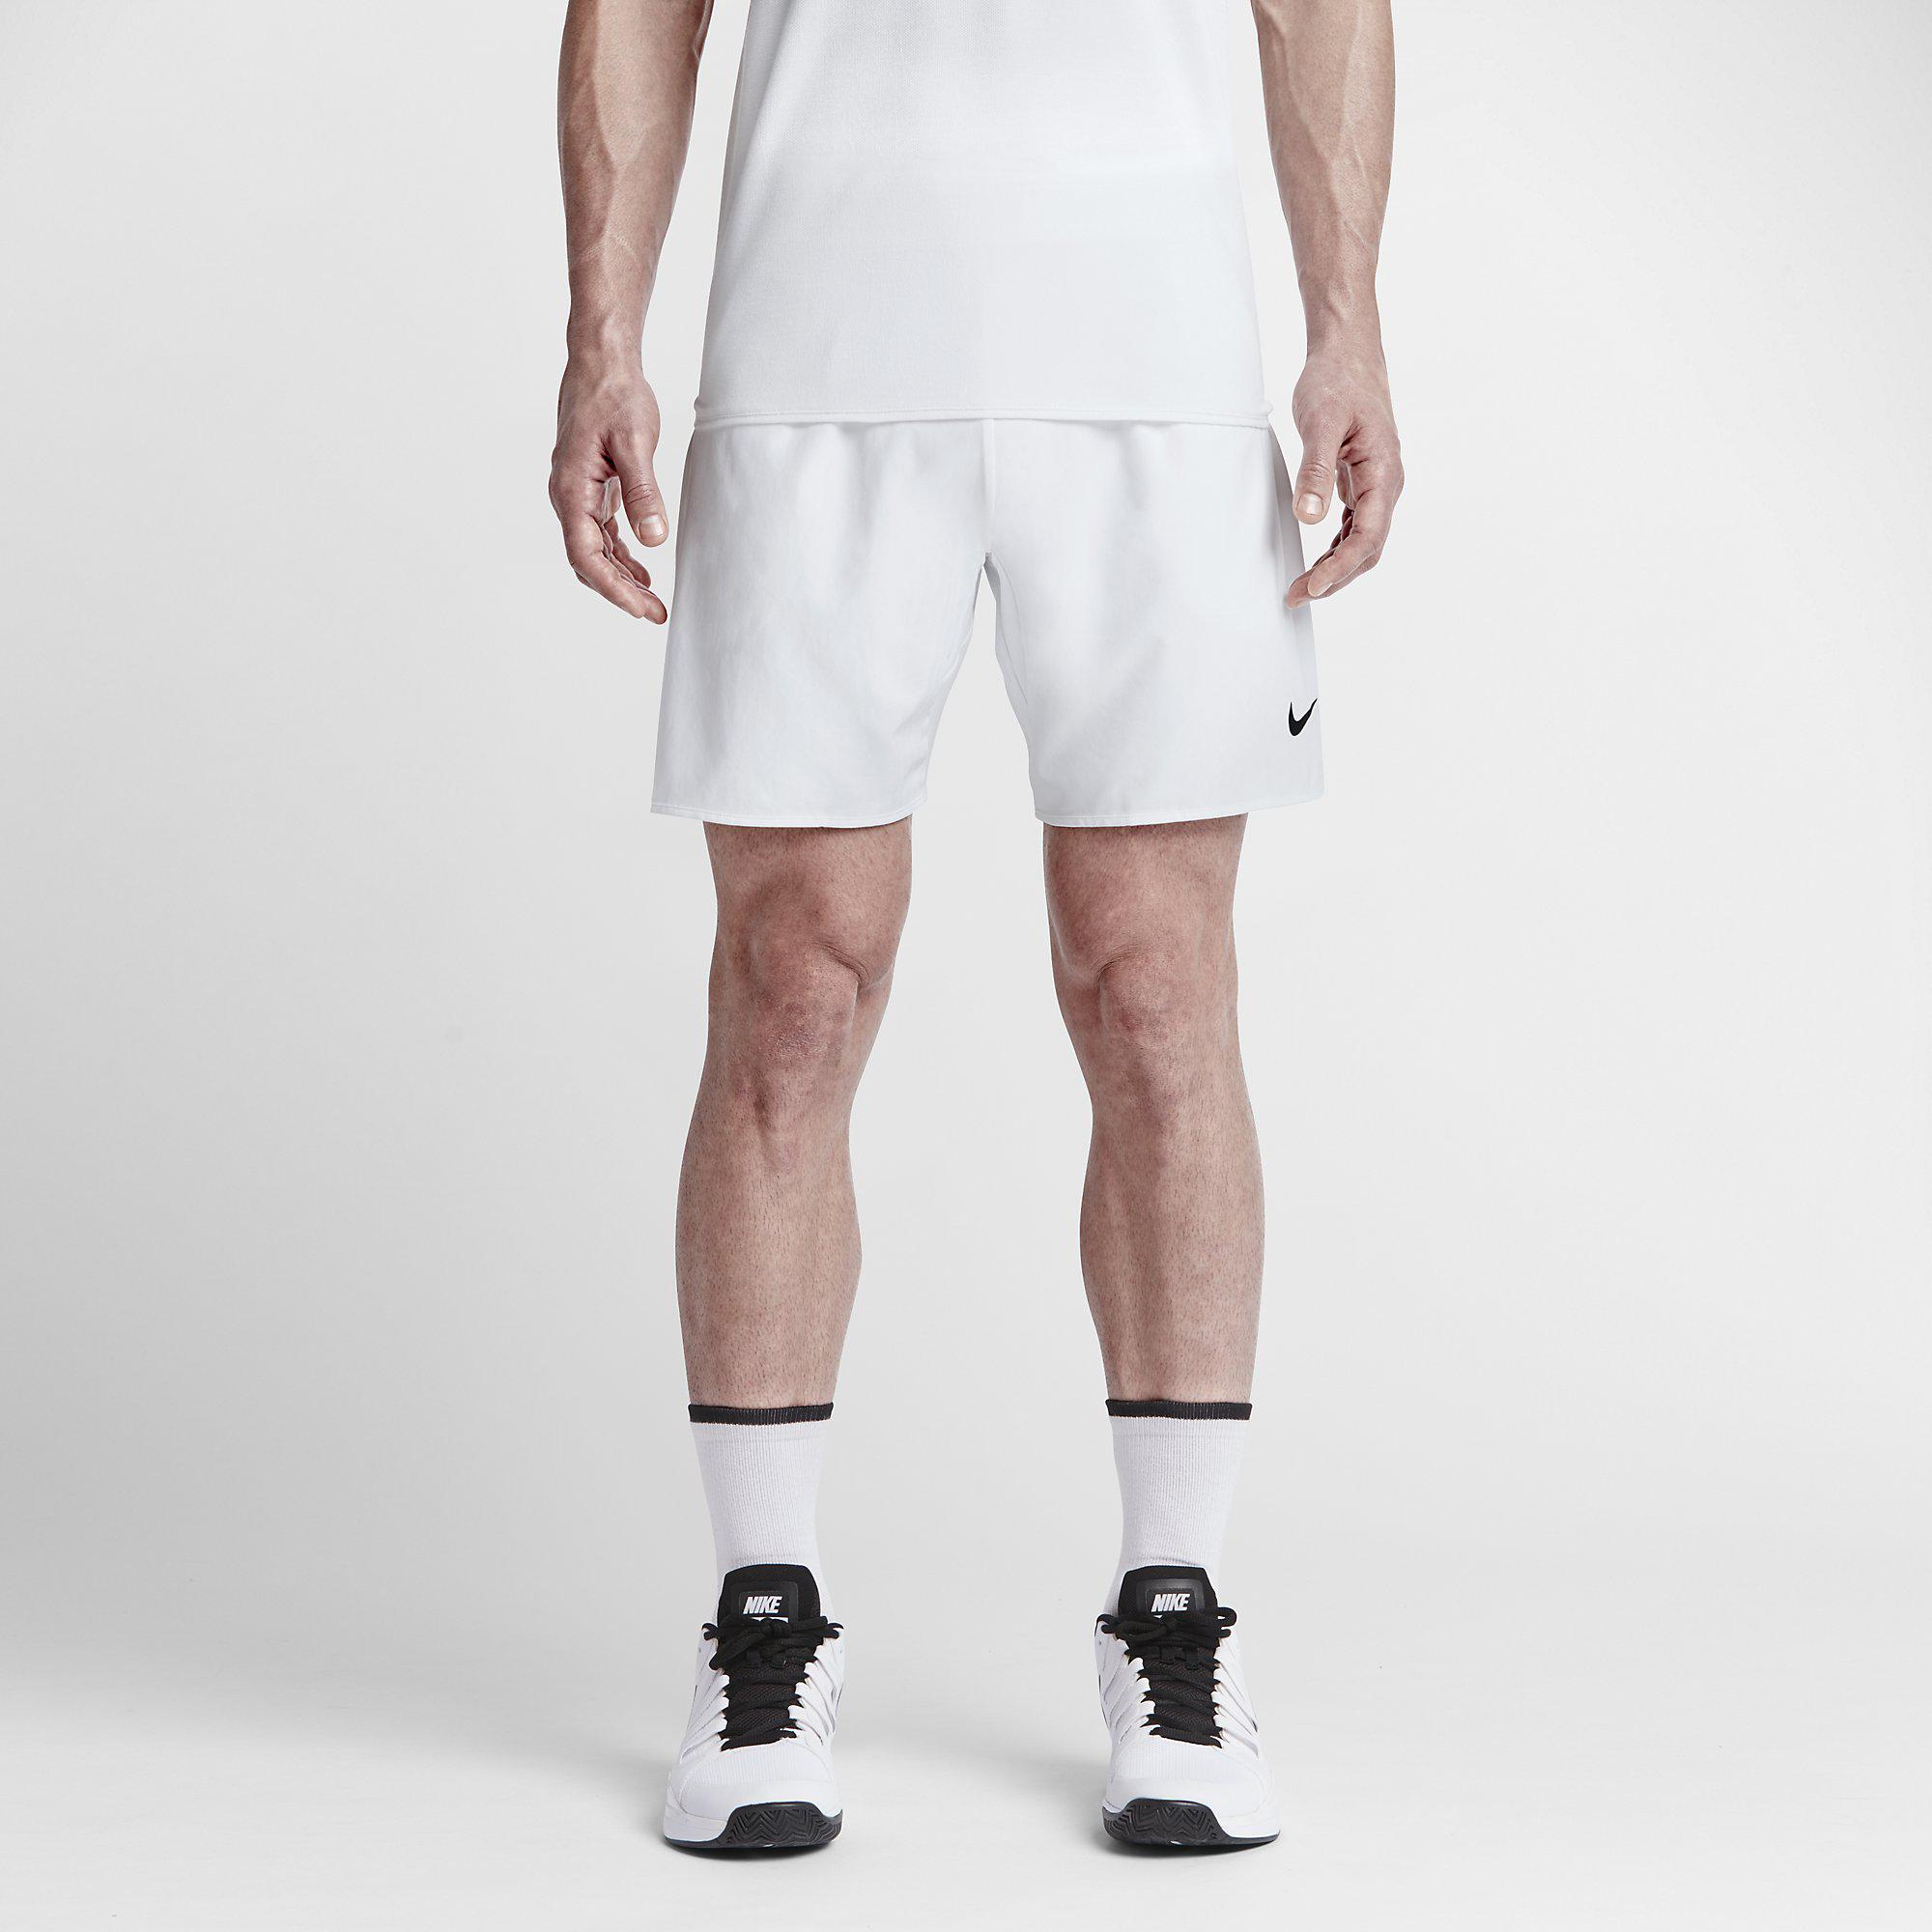 Nike Premier Gladiator 7 Shorts - White/Black Tennisnuts.com